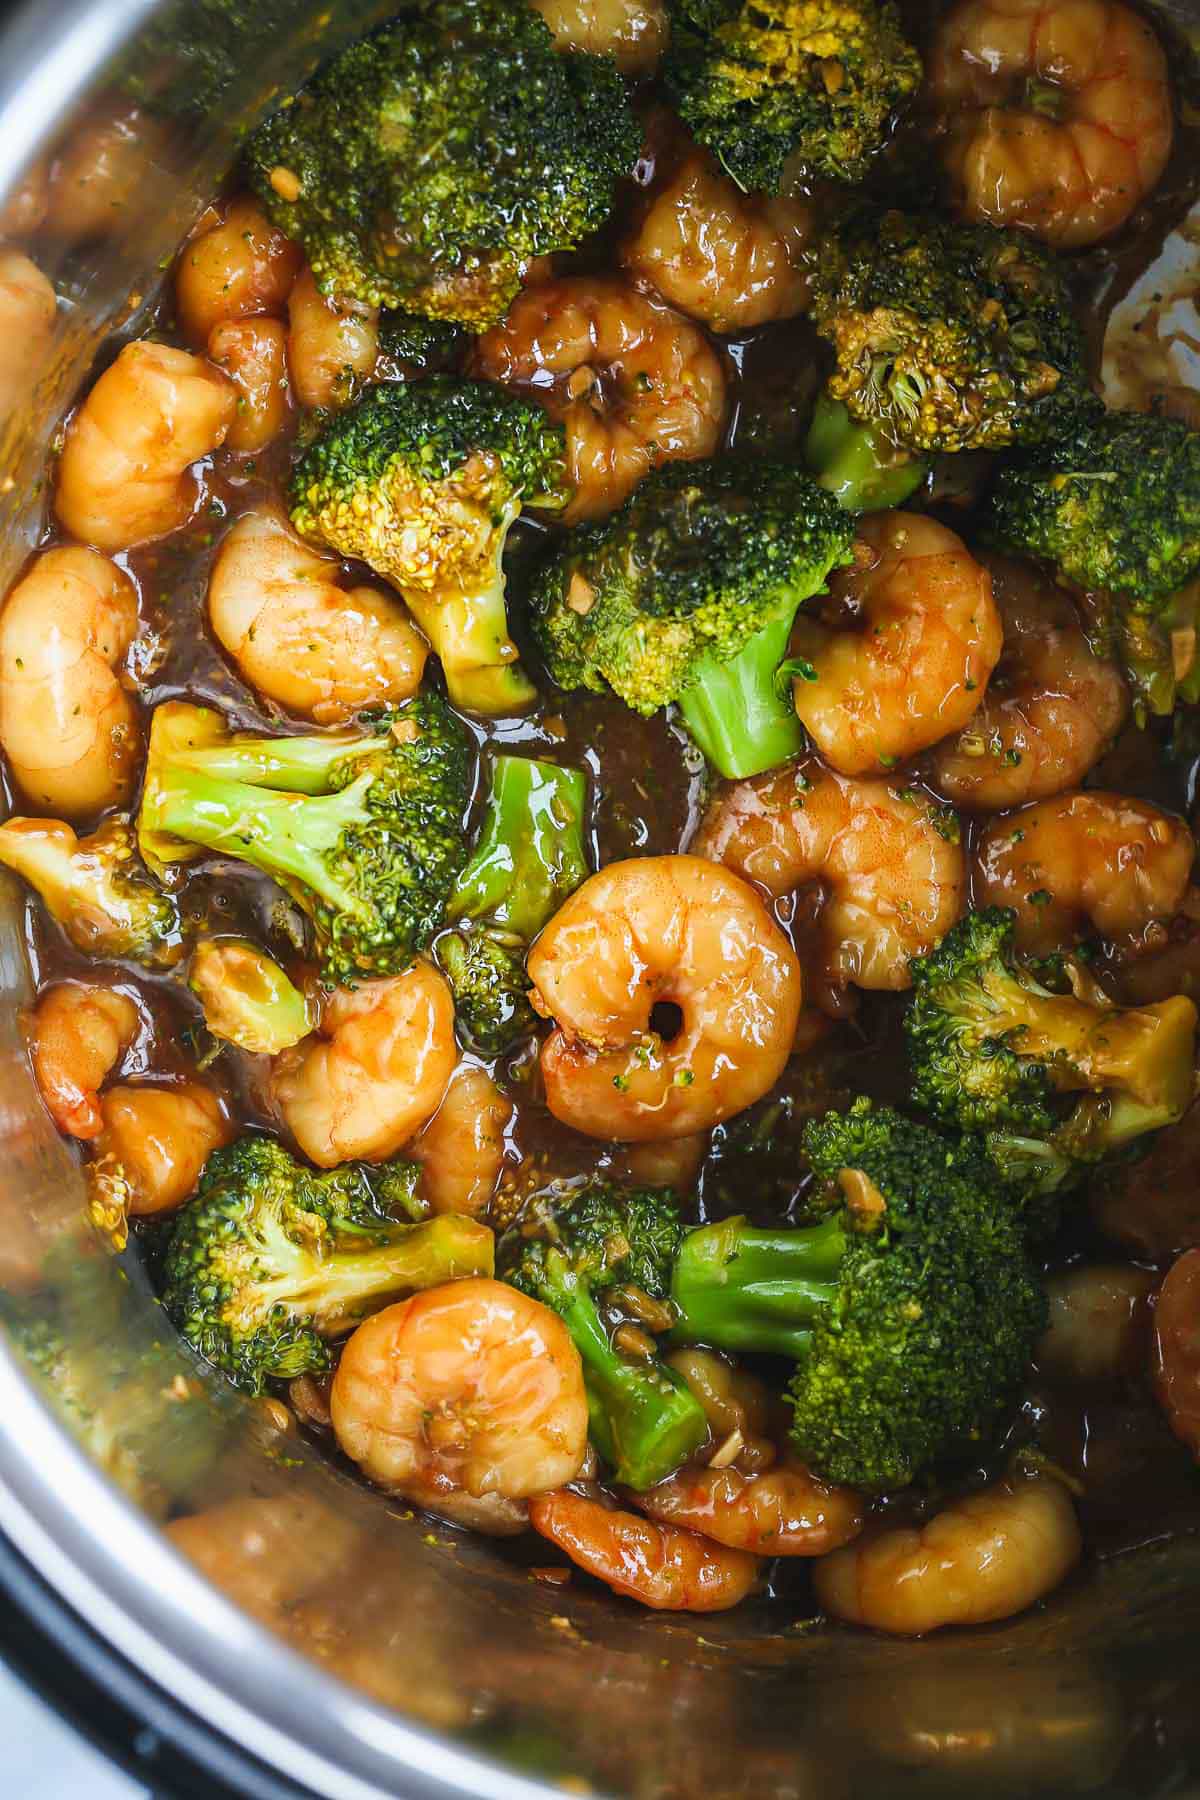 Shrimp and Broccoli stir fry